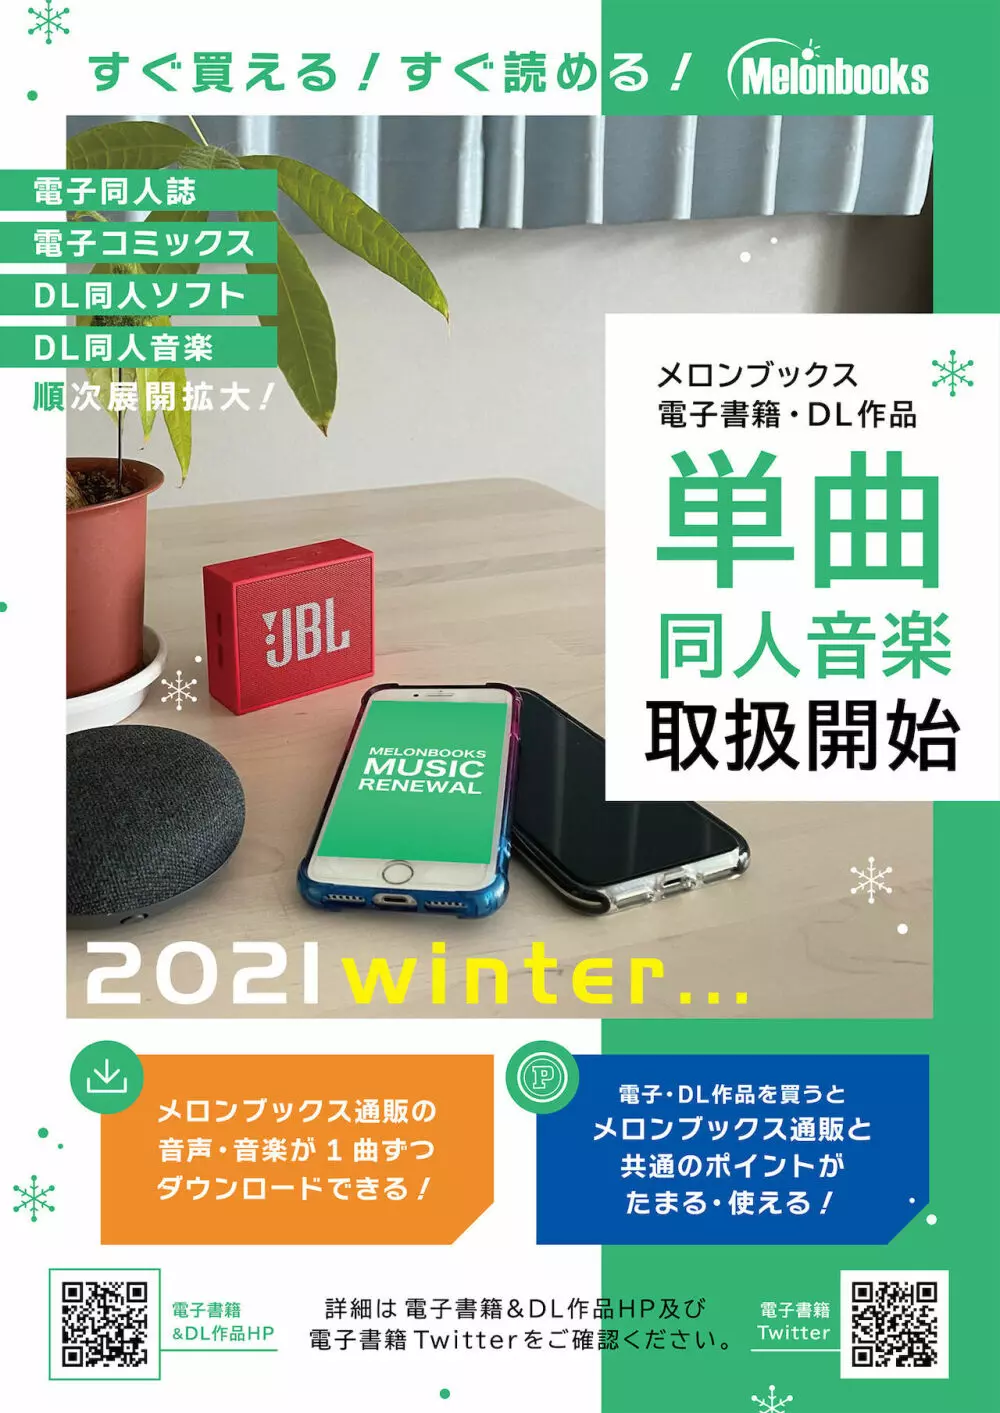 月刊うりぼうざっか店 2021年12月24日頃発行号 20ページ